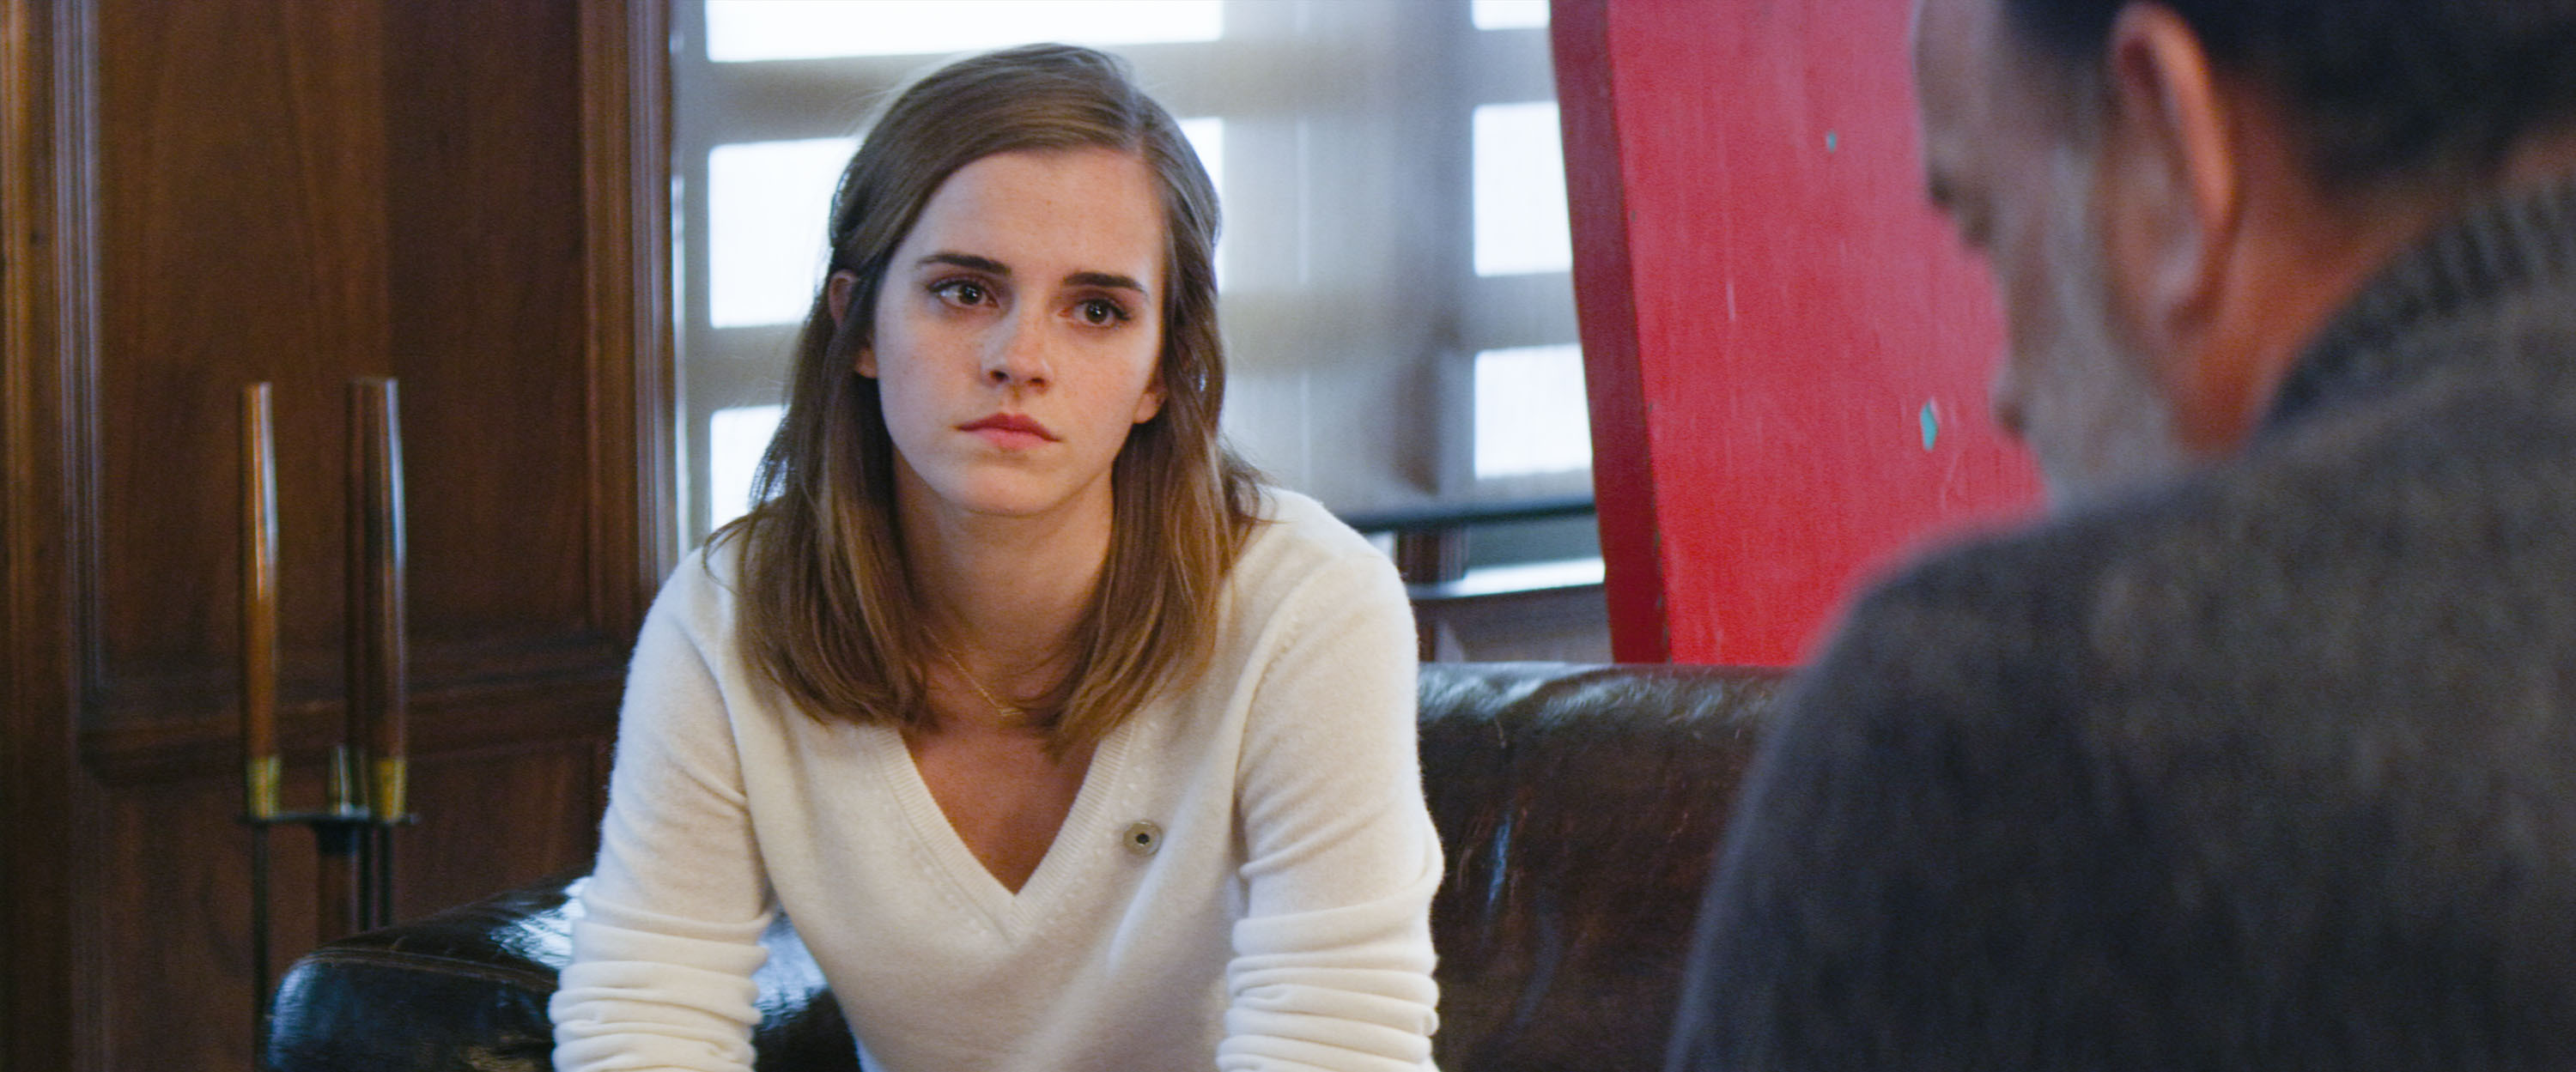 Emma Watson vào vai nữ chính trong bộ phim điện ảnh The Circle khởi chiếu năm 2017